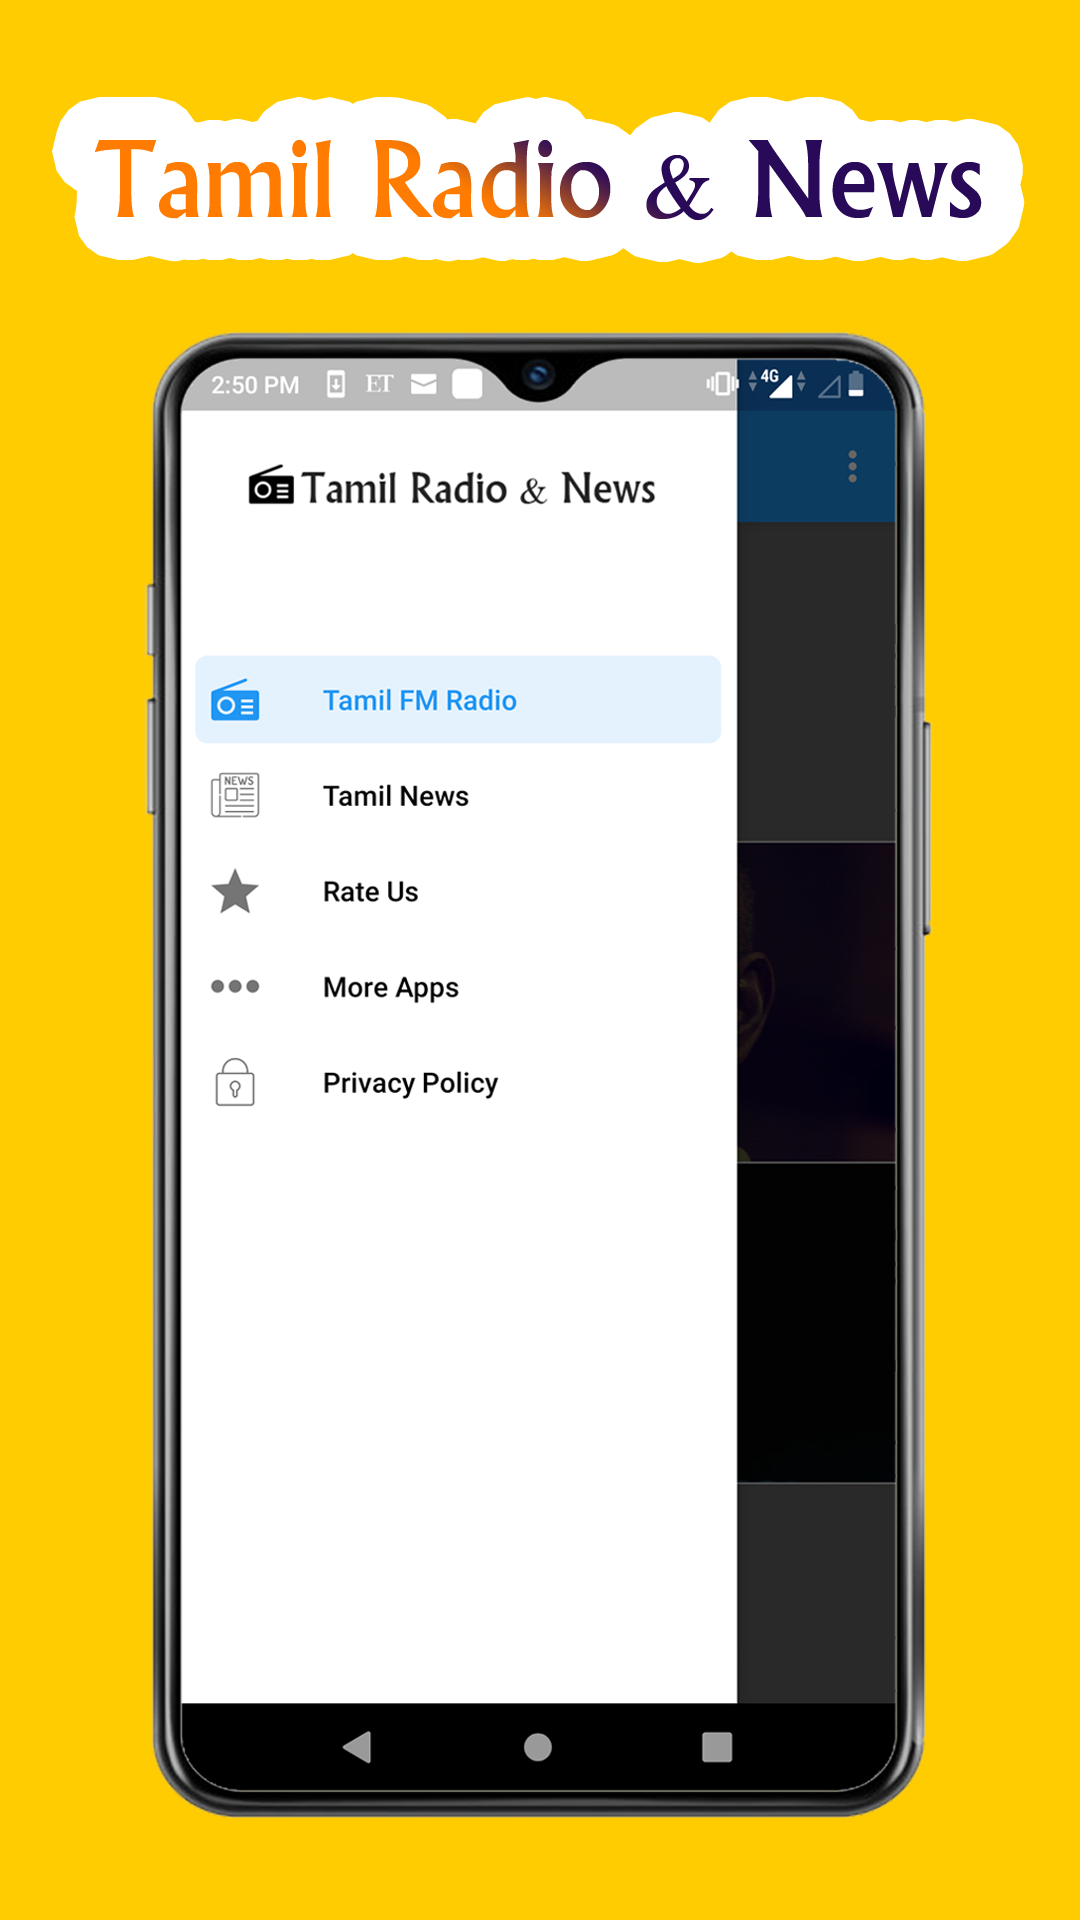 Tamil FM Radio Songs & Tamil News, Tamil Music FM APK 2.0 for Android –  Download Tamil FM Radio Songs & Tamil News, Tamil Music FM APK Latest  Version from APKFab.com